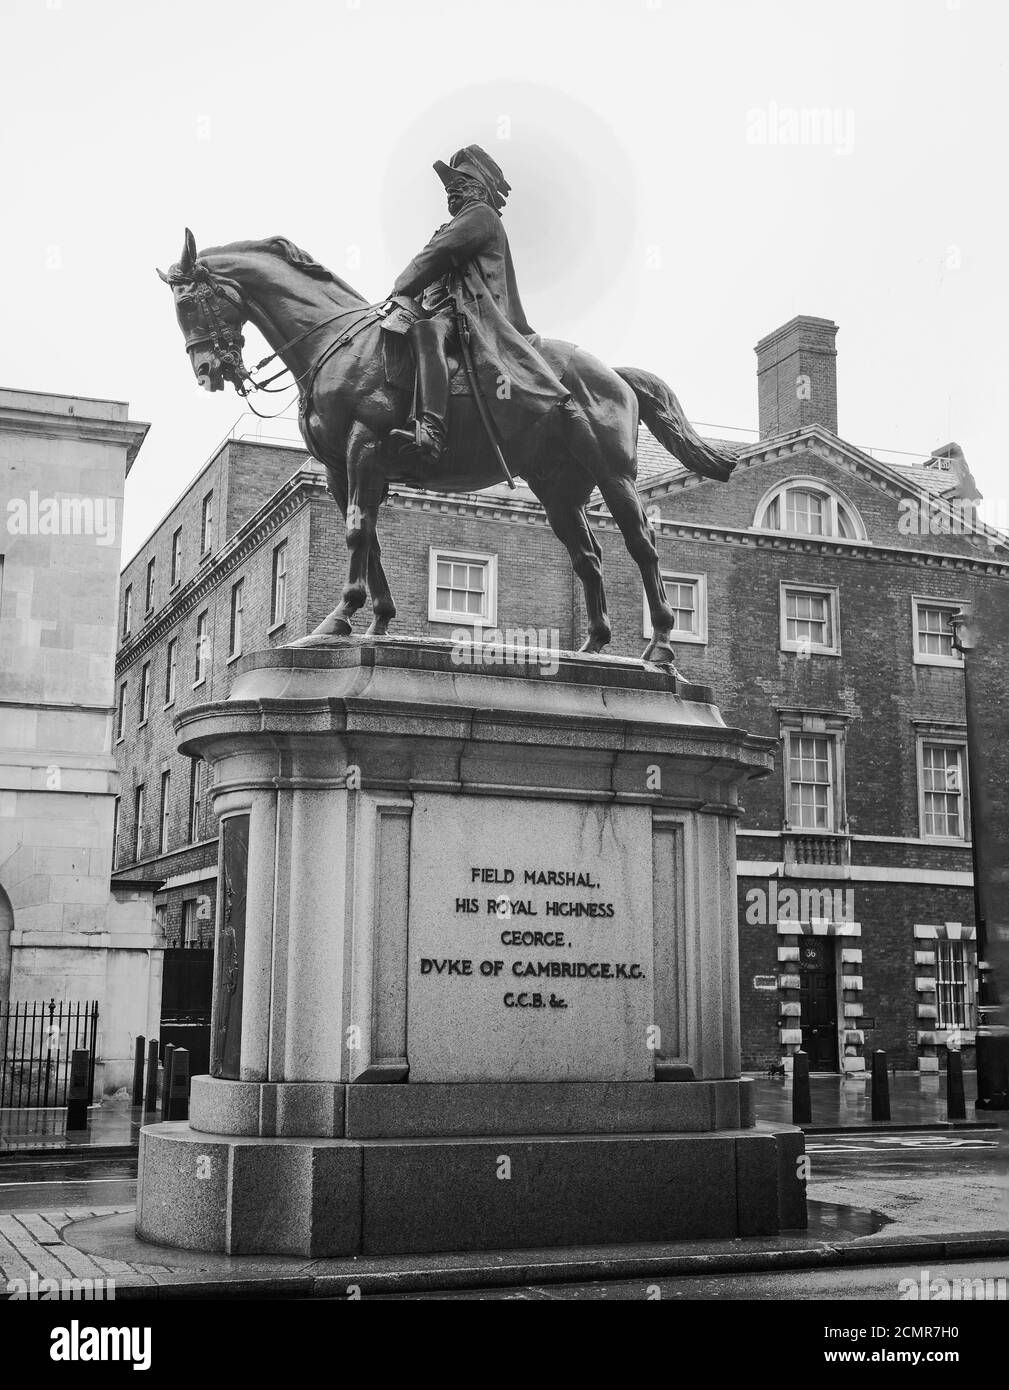 Statue équestre du duc de Cambridge, Whitehall est un monument commémoratif de taille réelle d'Adrian Jones. Il se dresse fièrement sur Whitehall à l'extérieur de Horse Guards Pa Banque D'Images